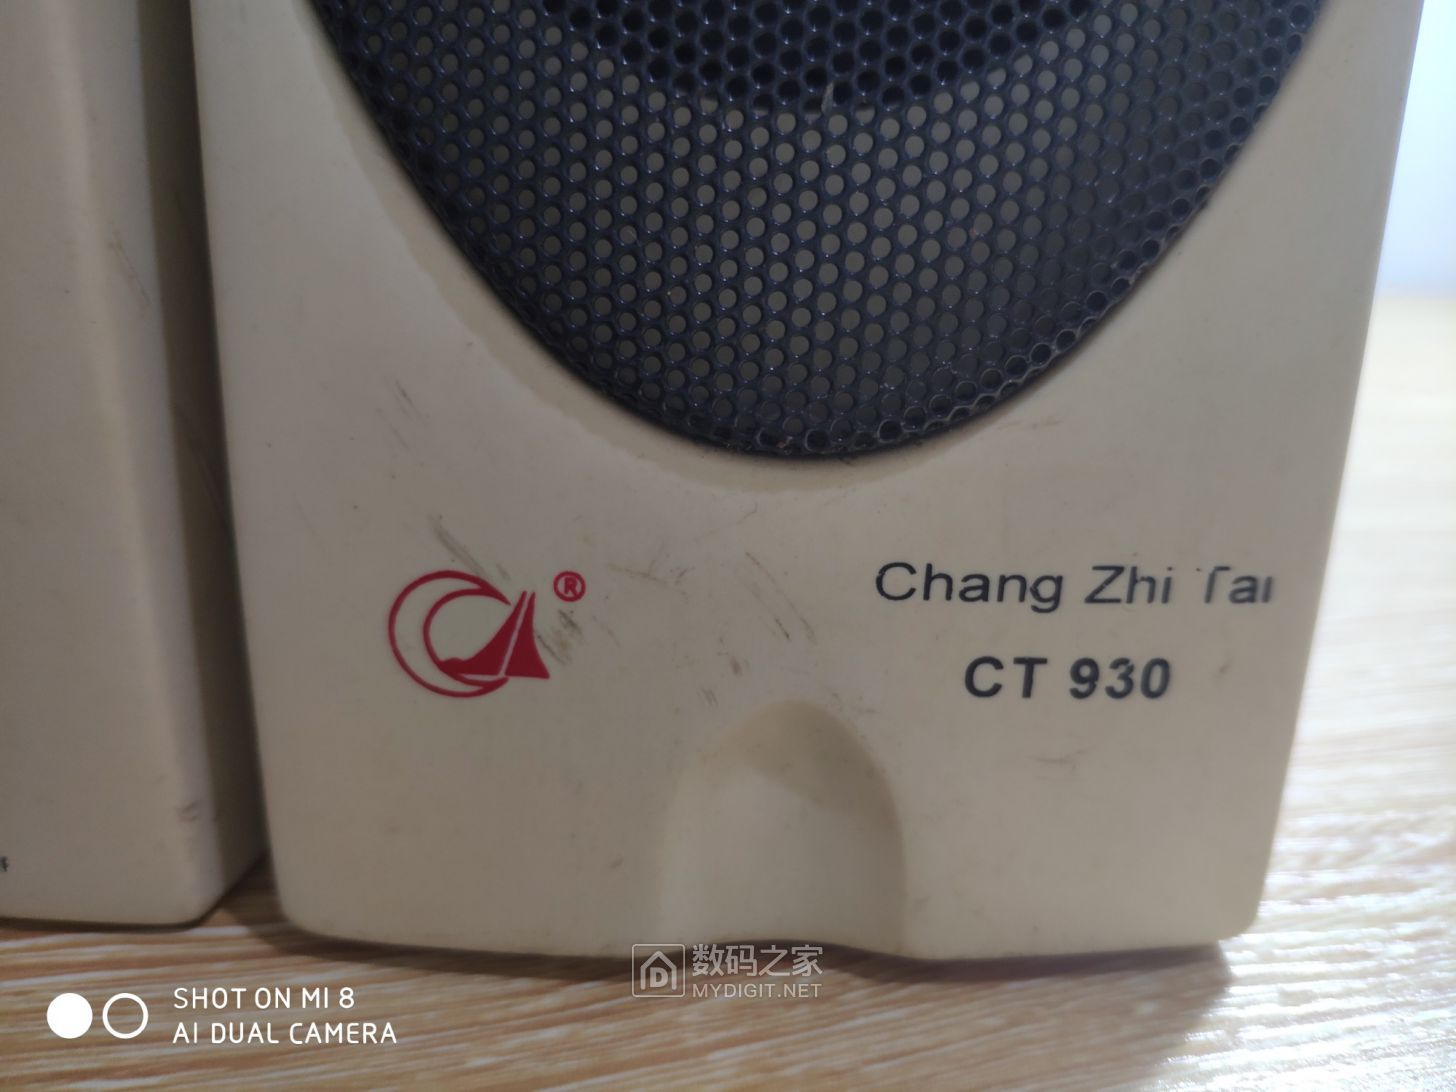 Chang Zhi Tai CT930